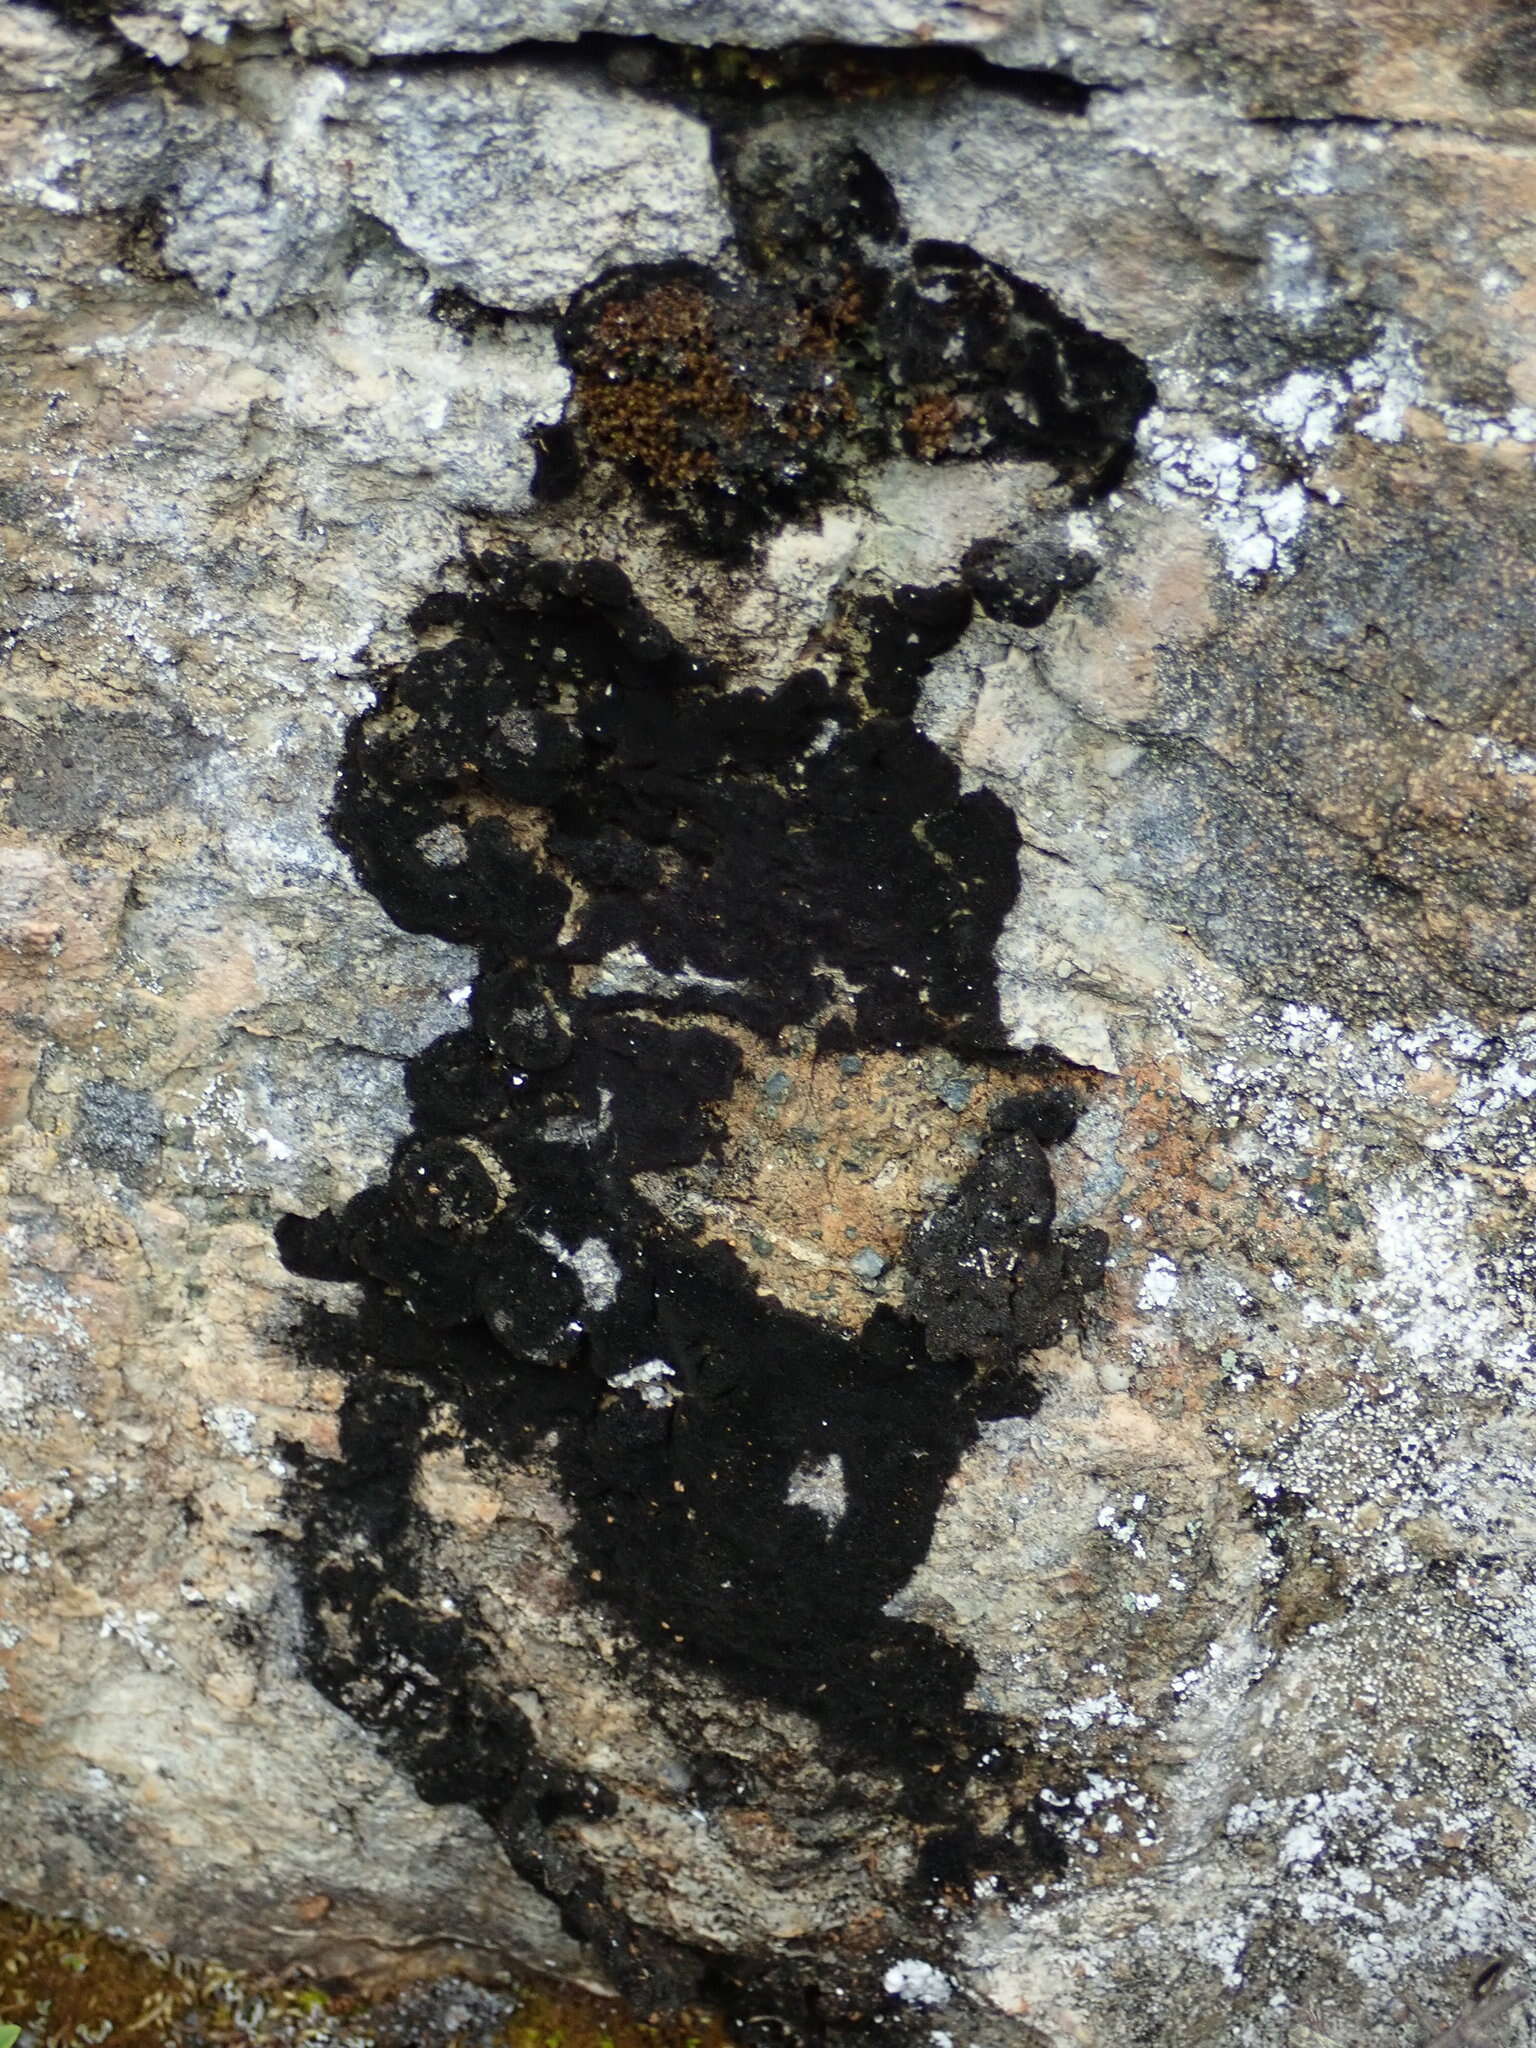 Image of Waterside rockshag lichen